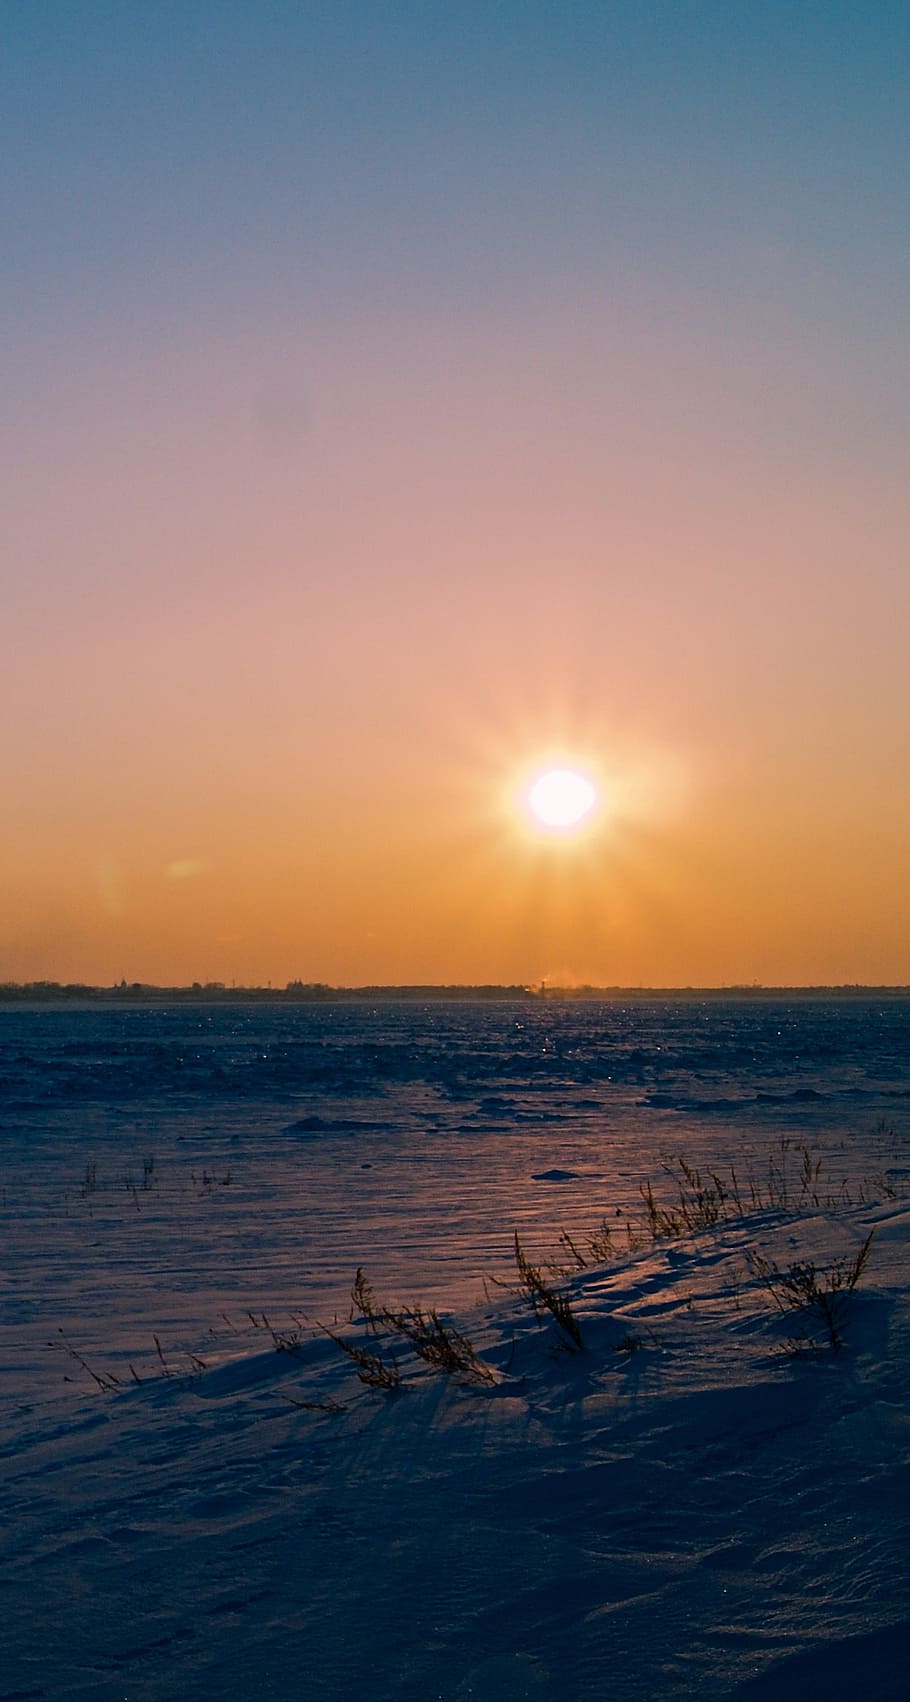 sol, siberia, invierno, puesta de sol, silencio, cielo, mar, agua, paisajes: naturaleza, belleza en la naturaleza